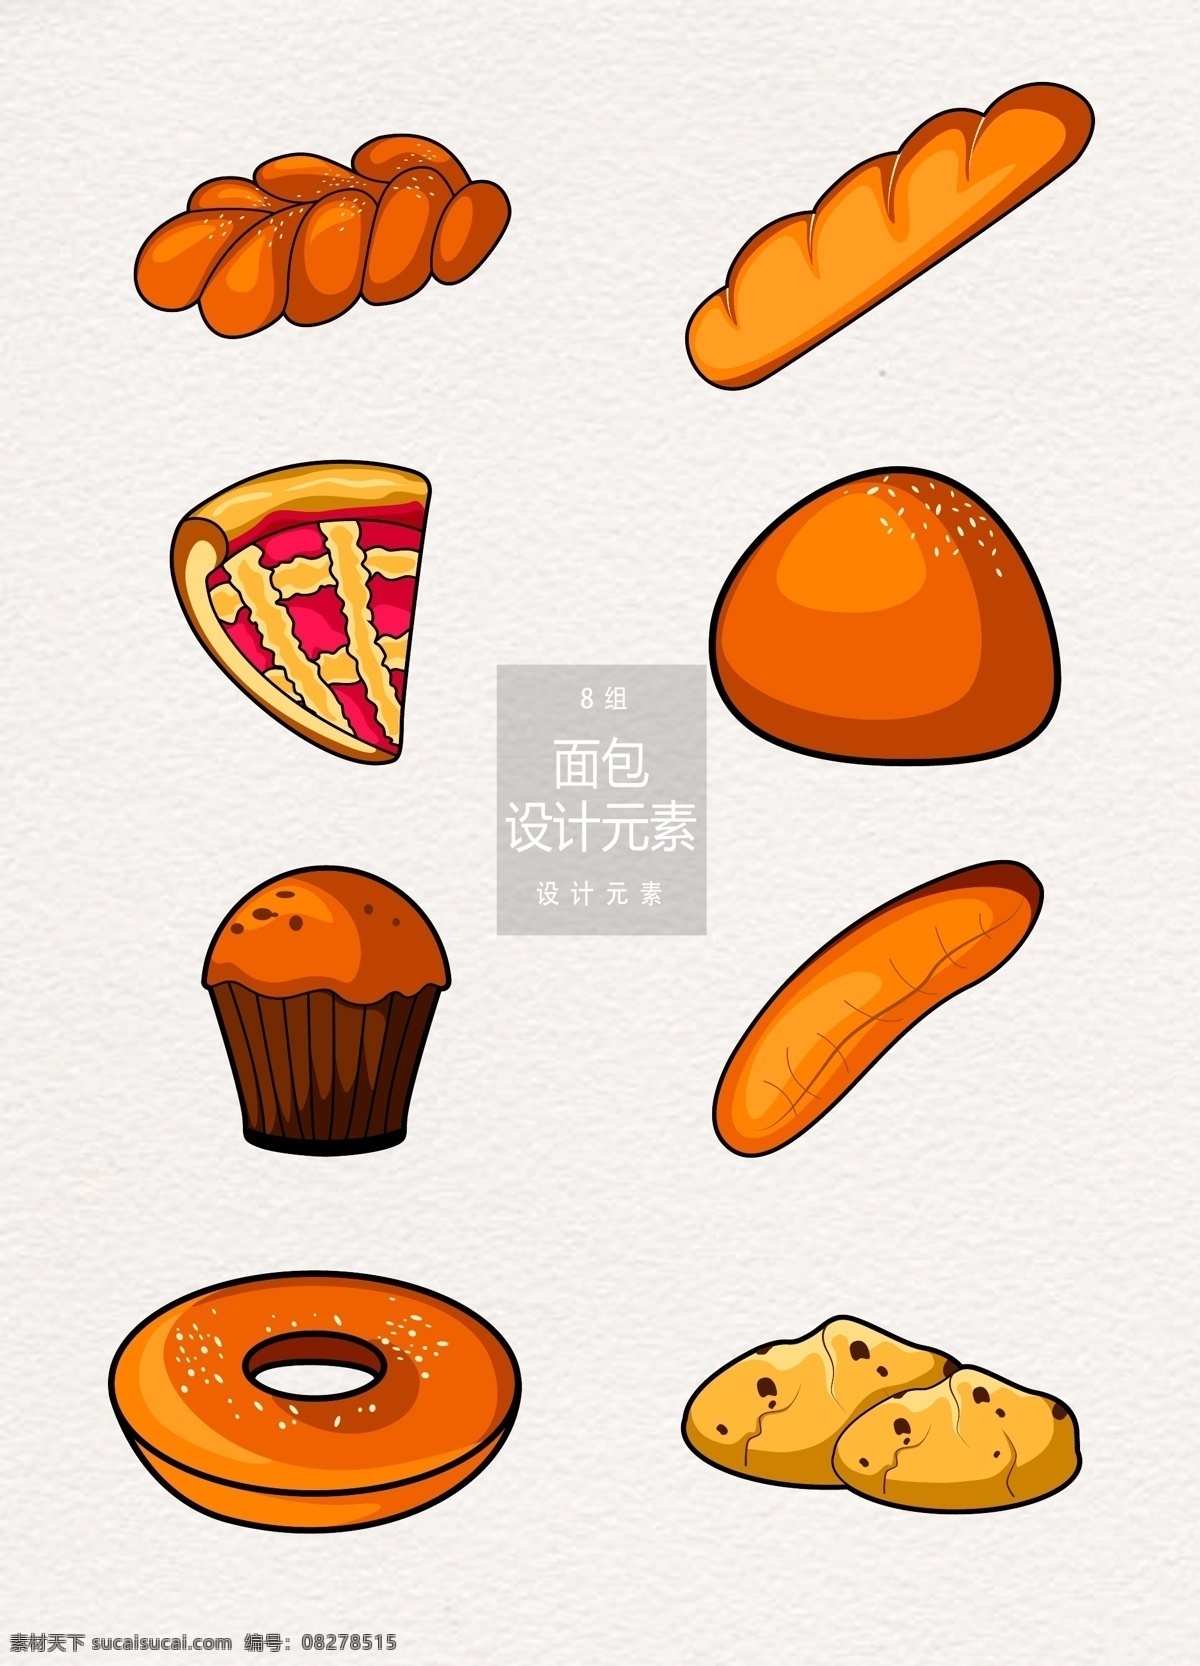 面包 早餐 手绘 食物 元素 披萨 蛋糕 饼干 设计元素 早餐食物 手绘食物 法国面包 甜甜圈 曲奇